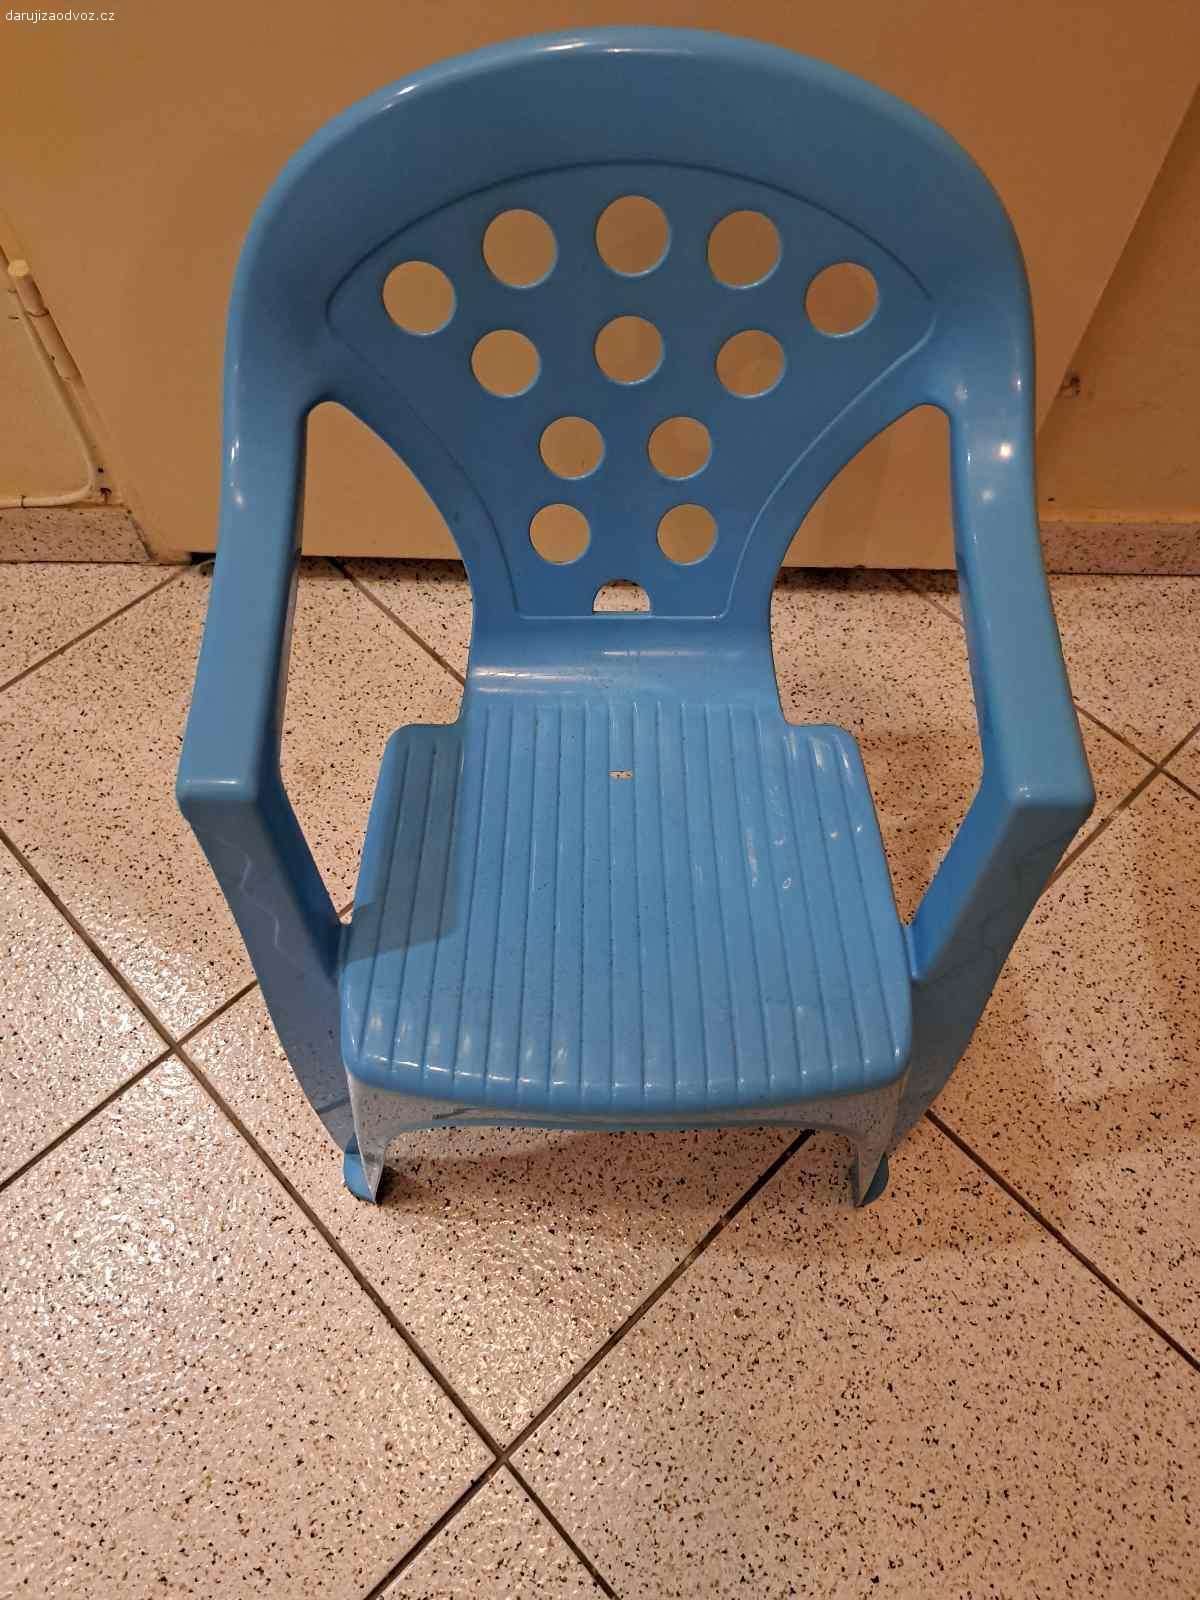 Plastova židlička. Vyměním dětskou plastovou židličku. Běžně známky používání.
Za Haribo třeba,Tropufrutti.
Pouze osobní odběr